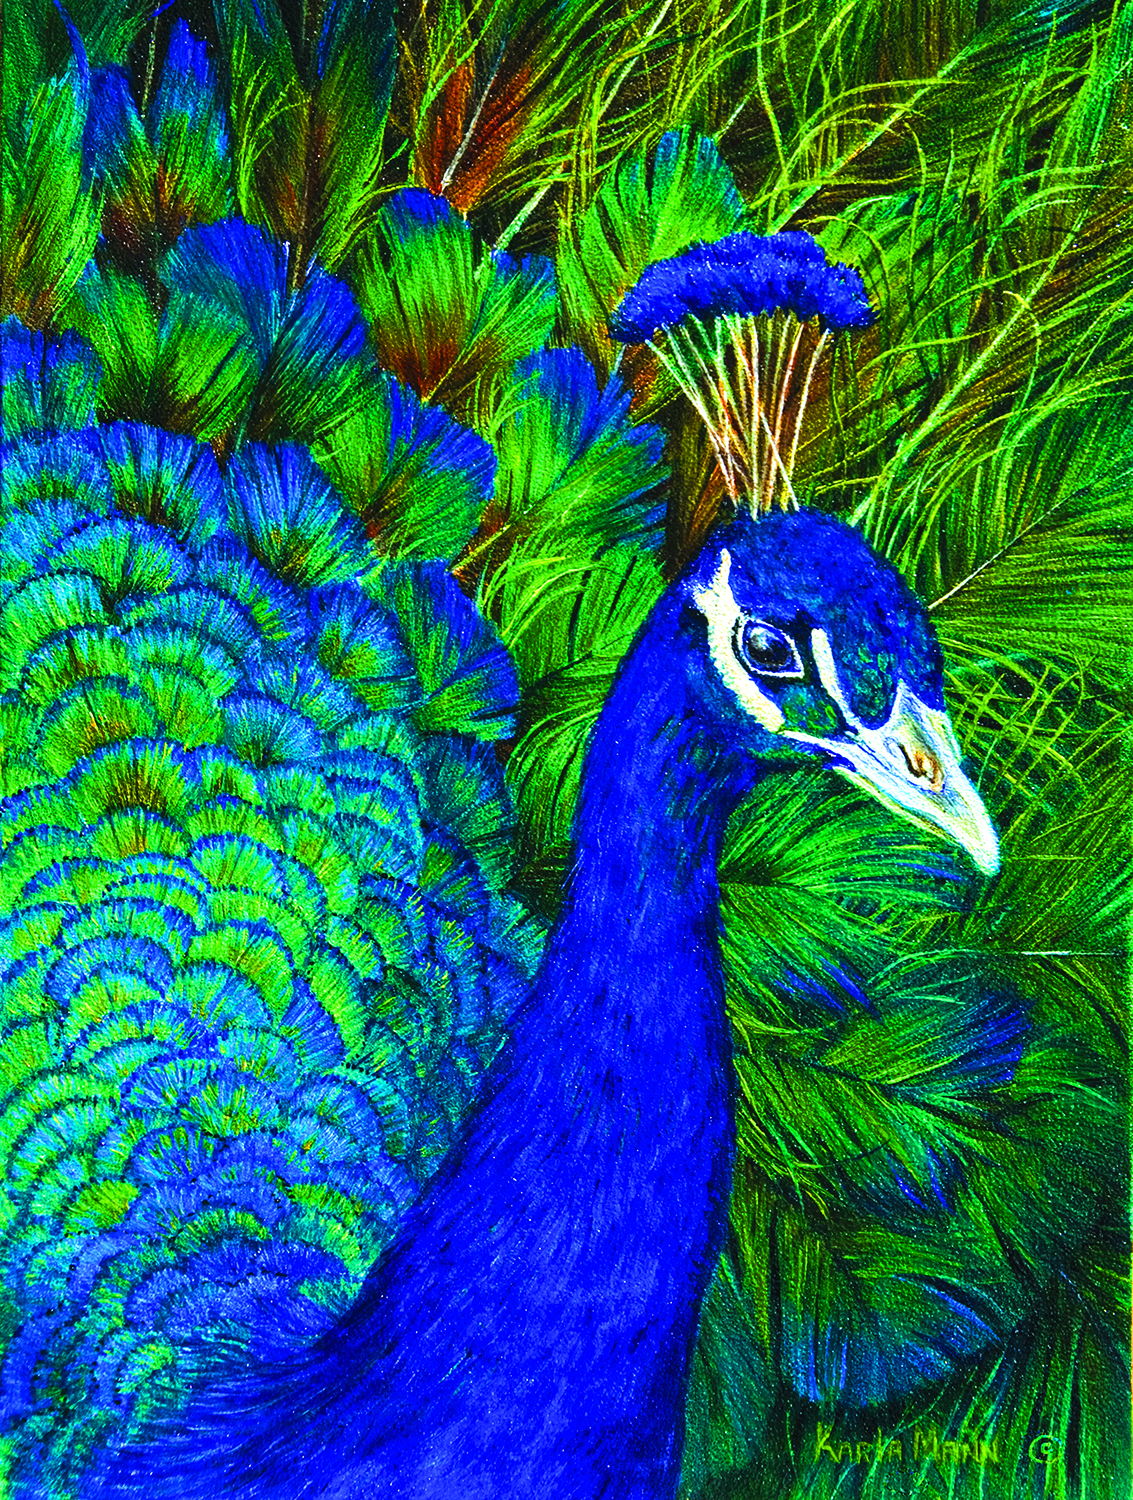 SO-26204 - Peacock